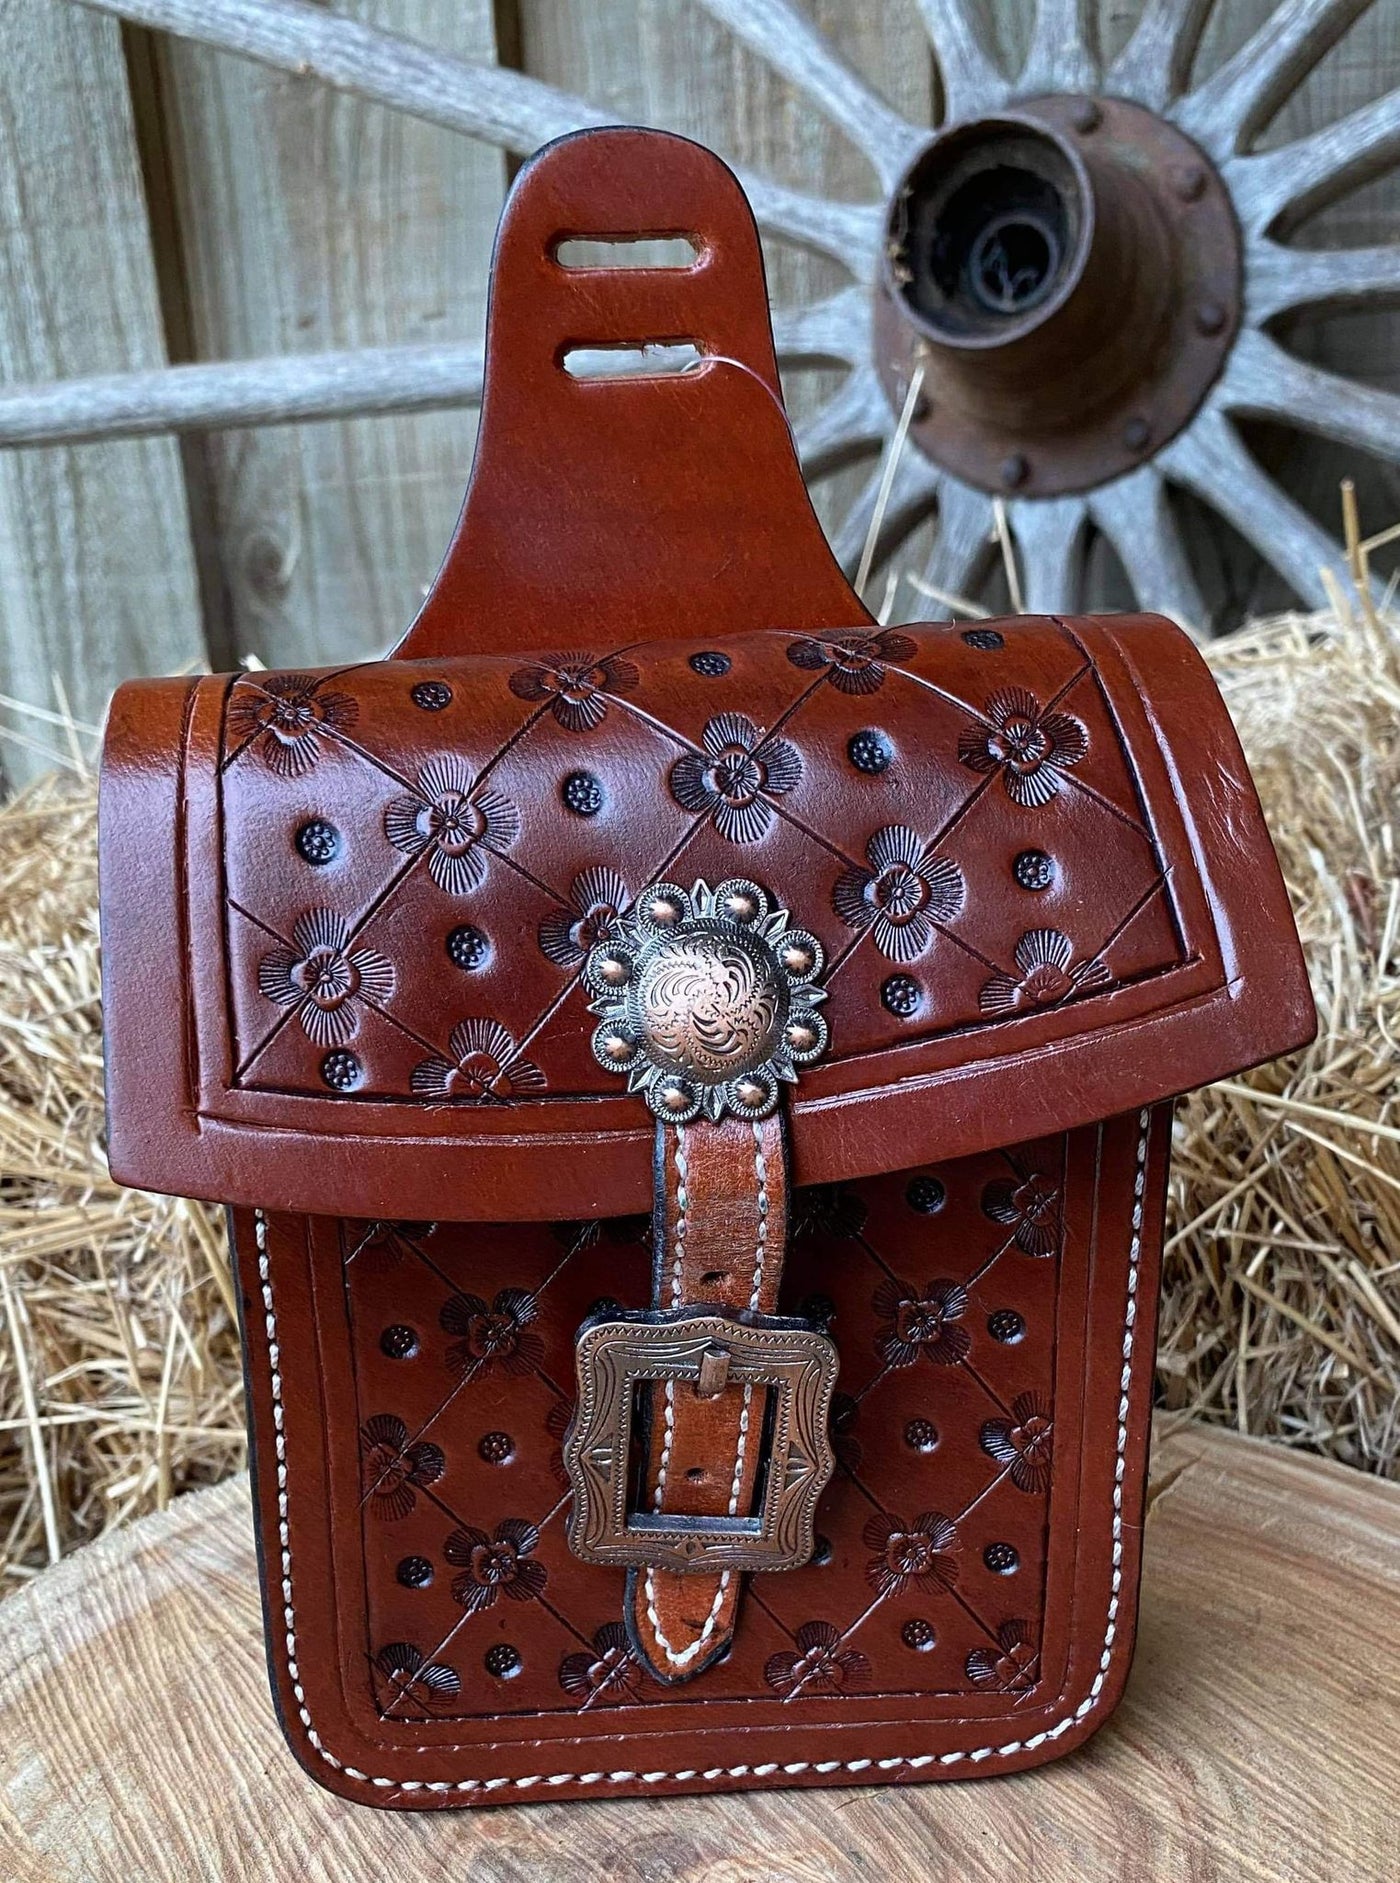 Saddle Bag - Mini Saddle Bag for Phone & Keys